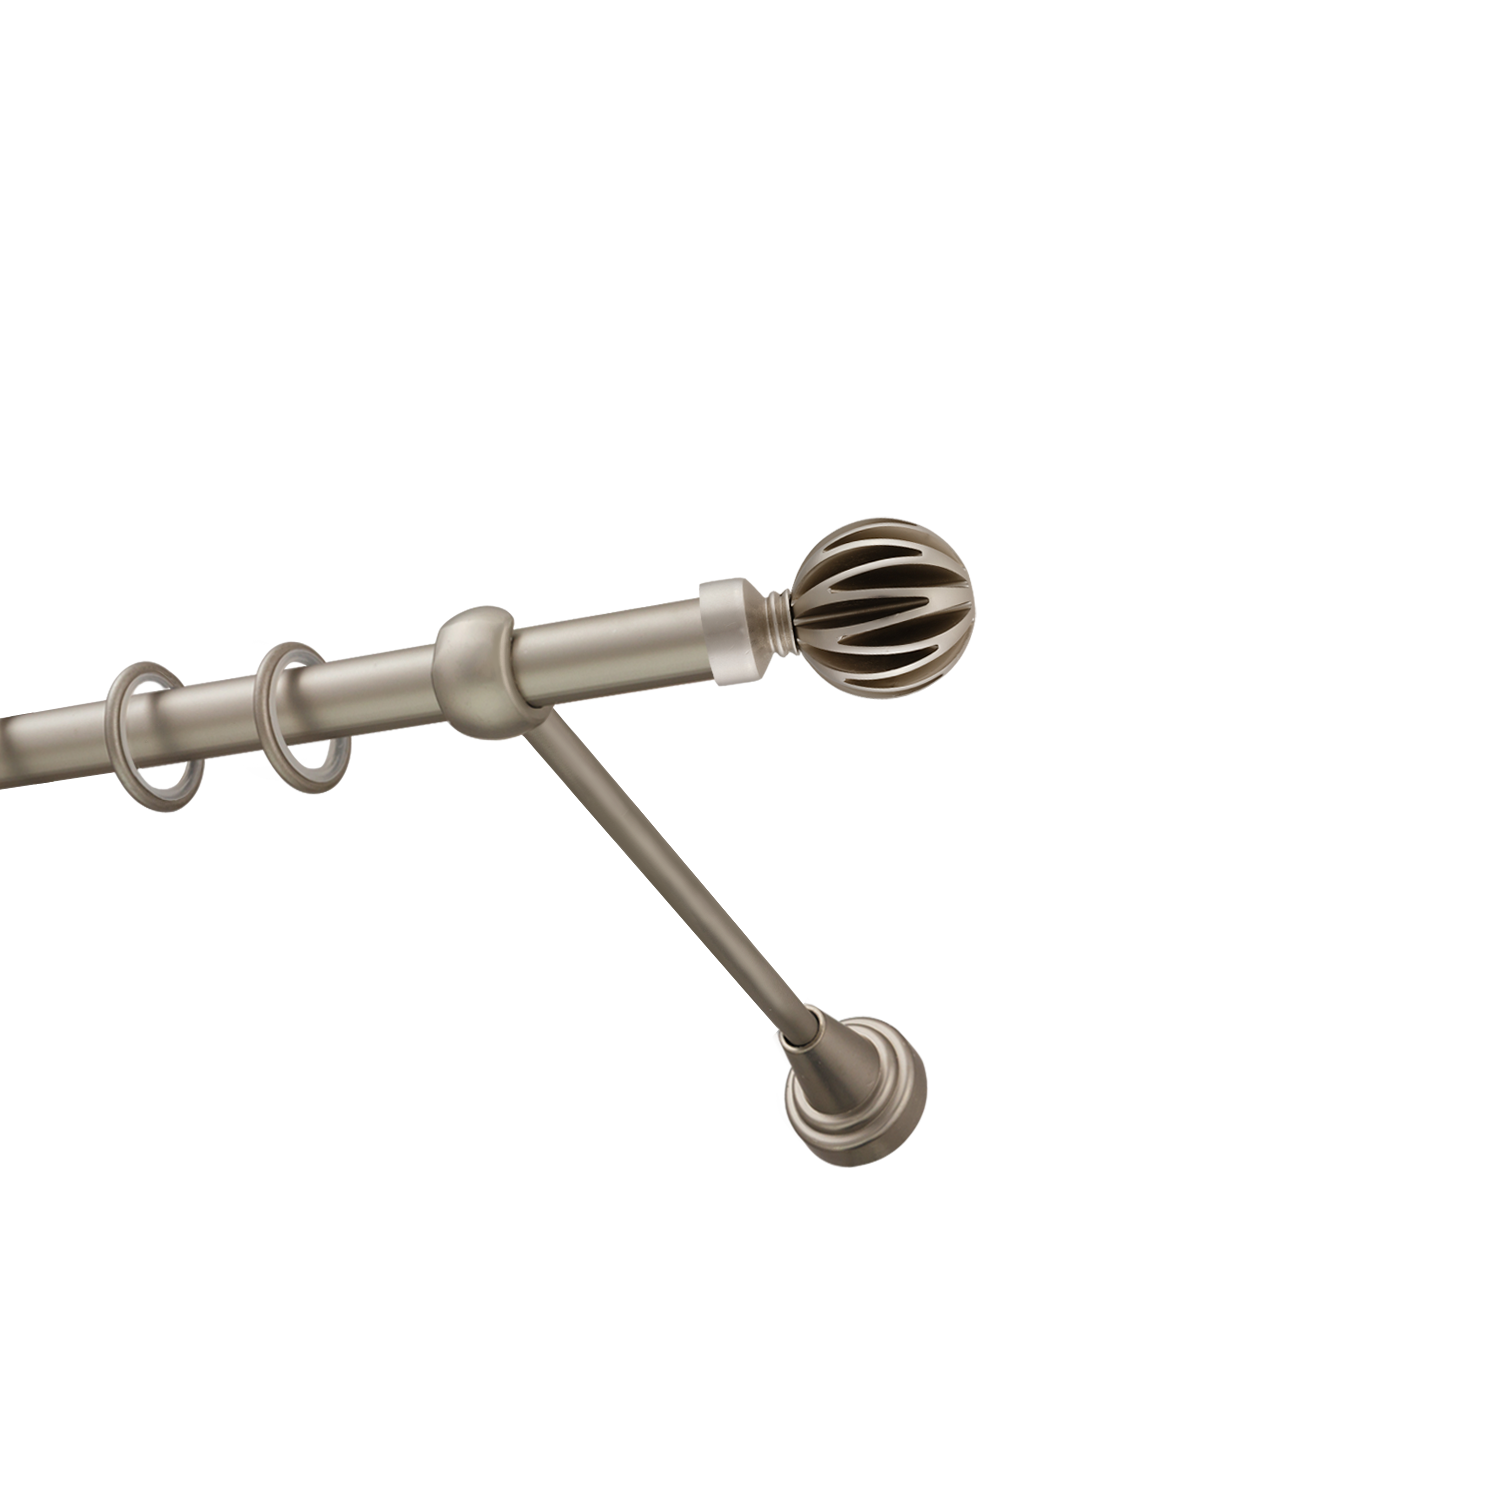 Металлический карниз для штор Шафран, однорядный 16 мм, сталь, гладкая штанга, длина 200 см - фото Wikidecor.ru